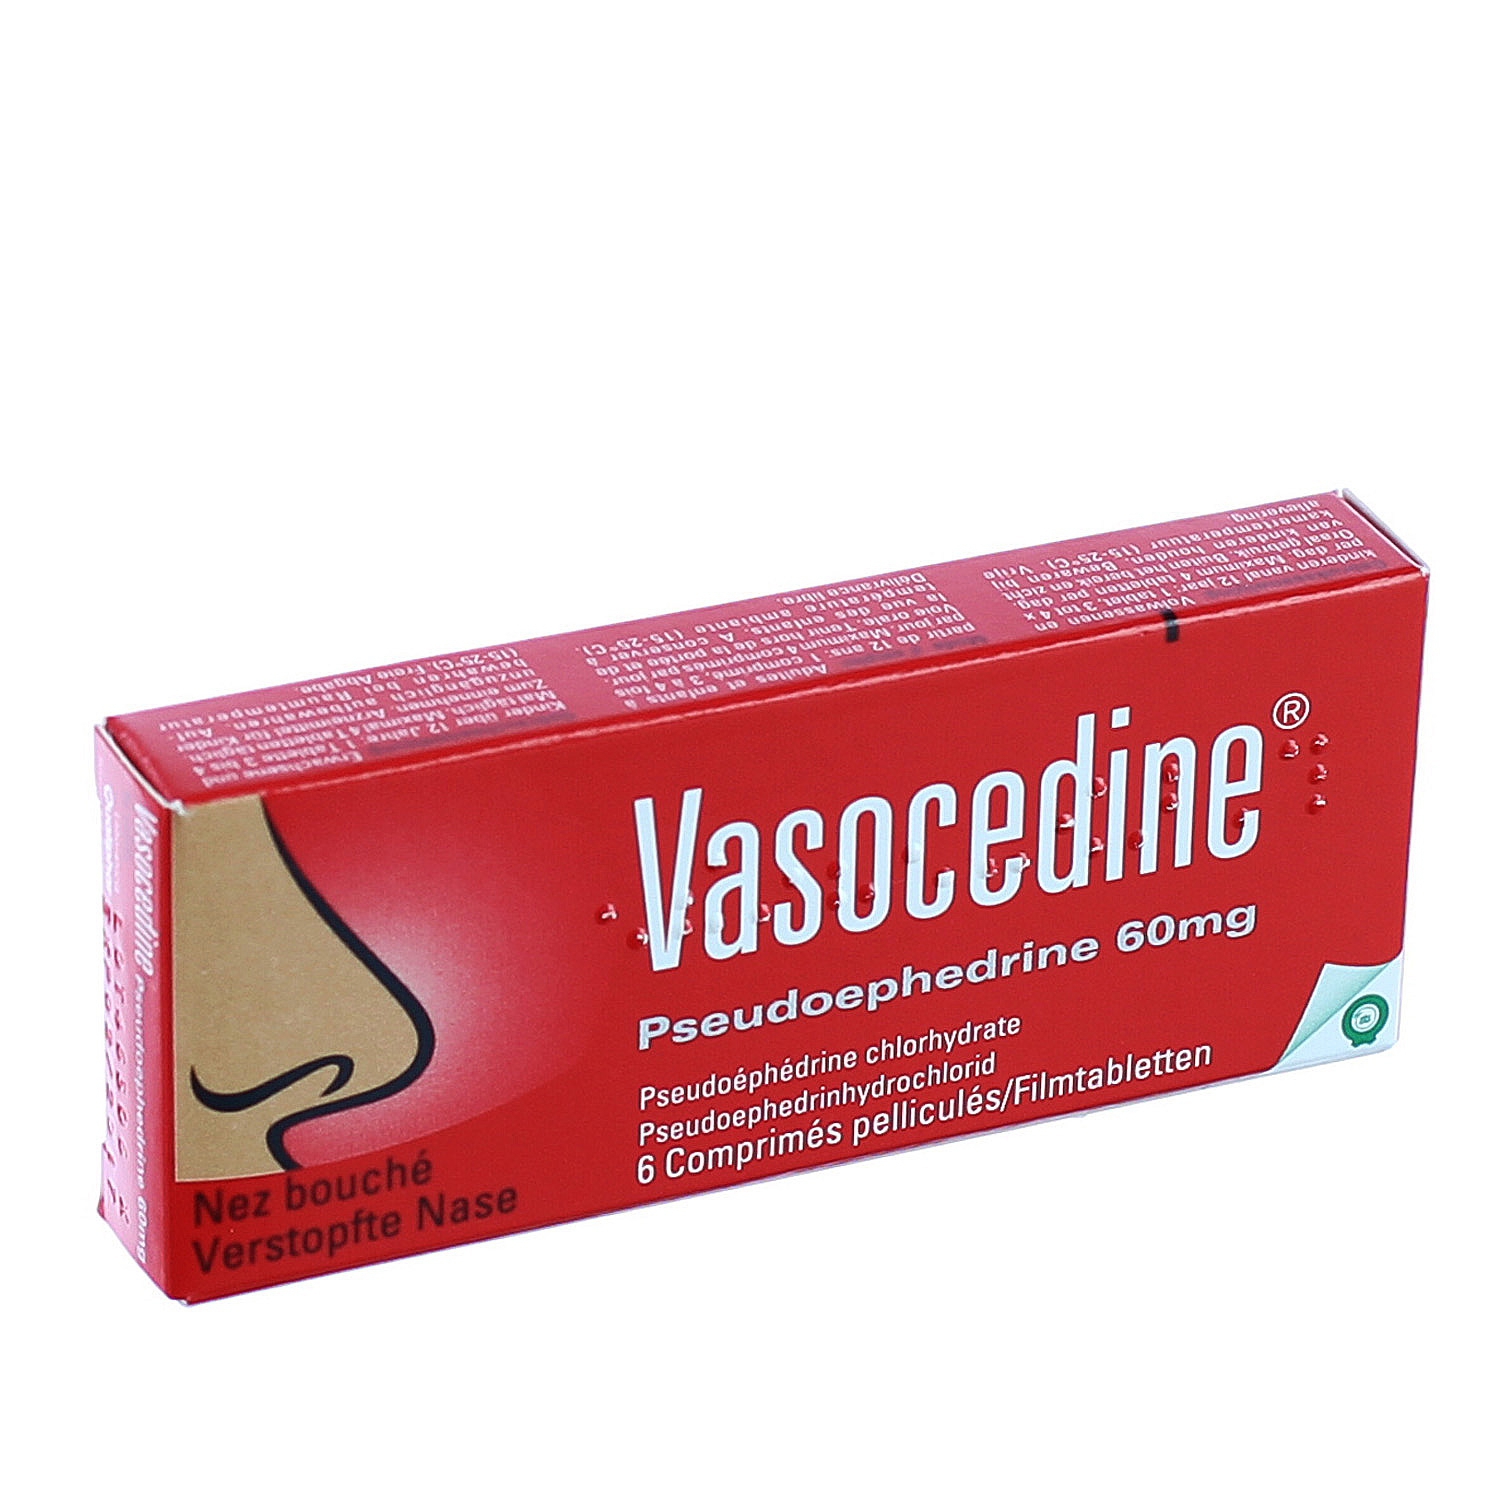 Vasocedine Pseudoephedrine - image 0